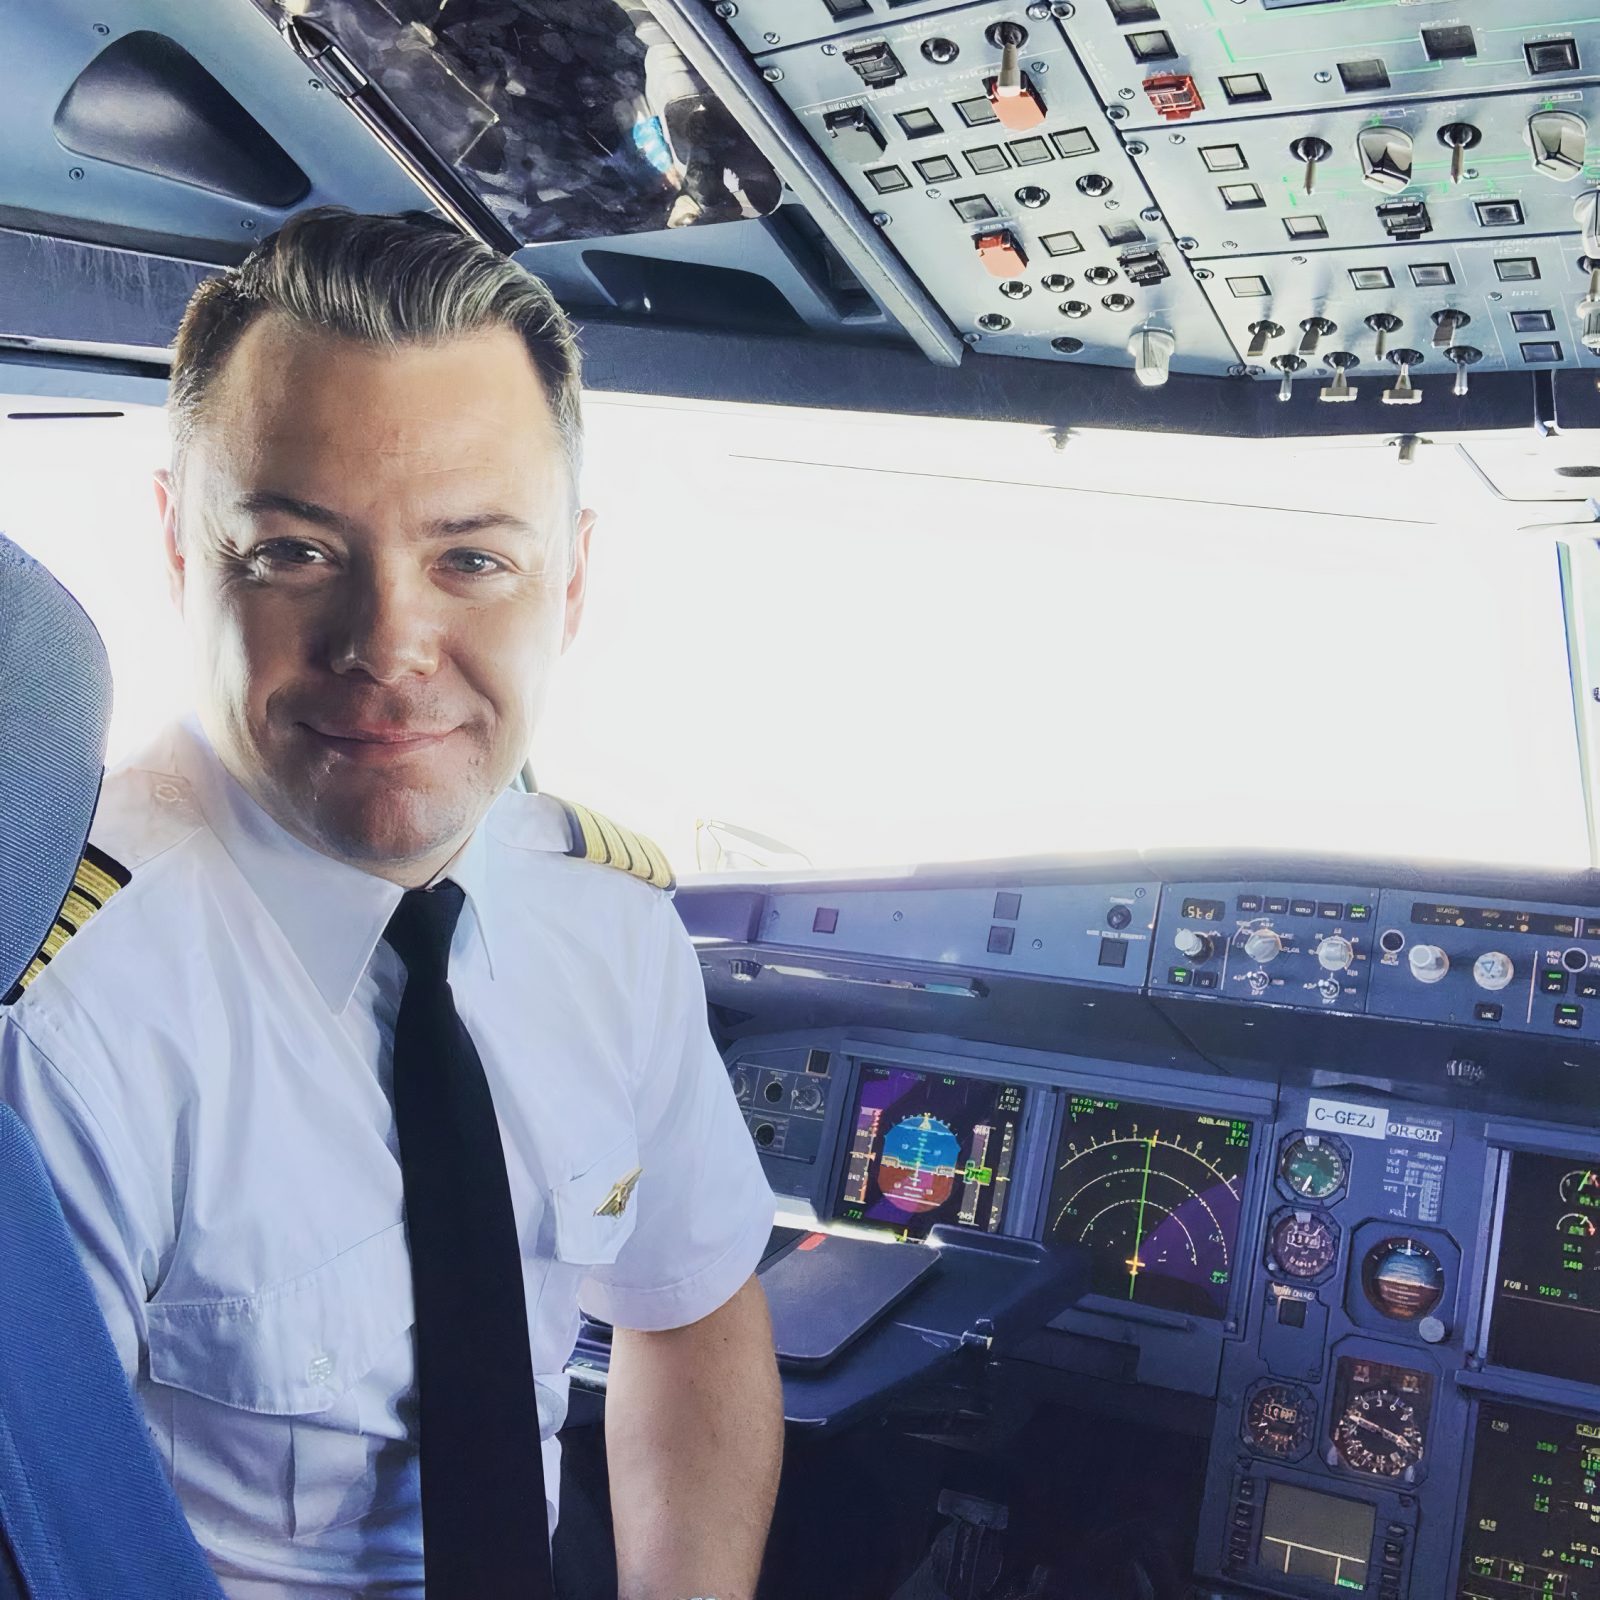 Un pilote julievillois partage sa passion et son expertise sur sa chaîne YouTube